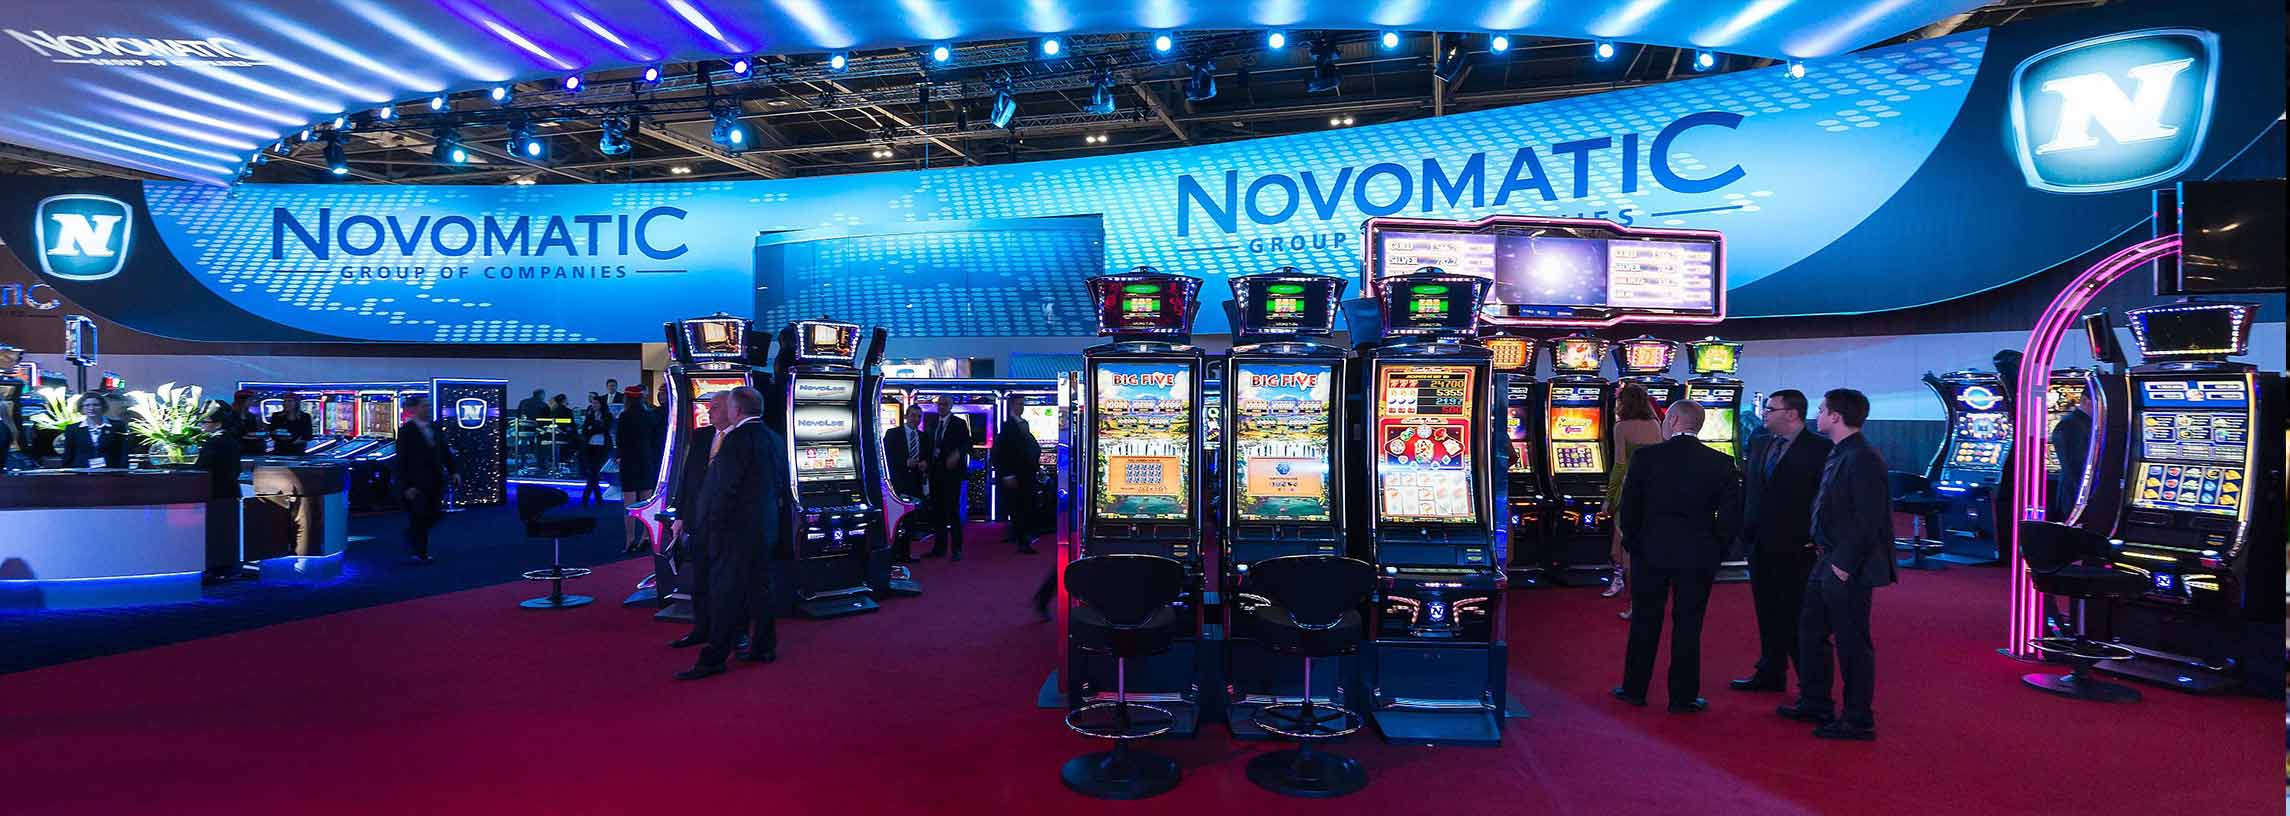 Novomatic Casino Game Provider